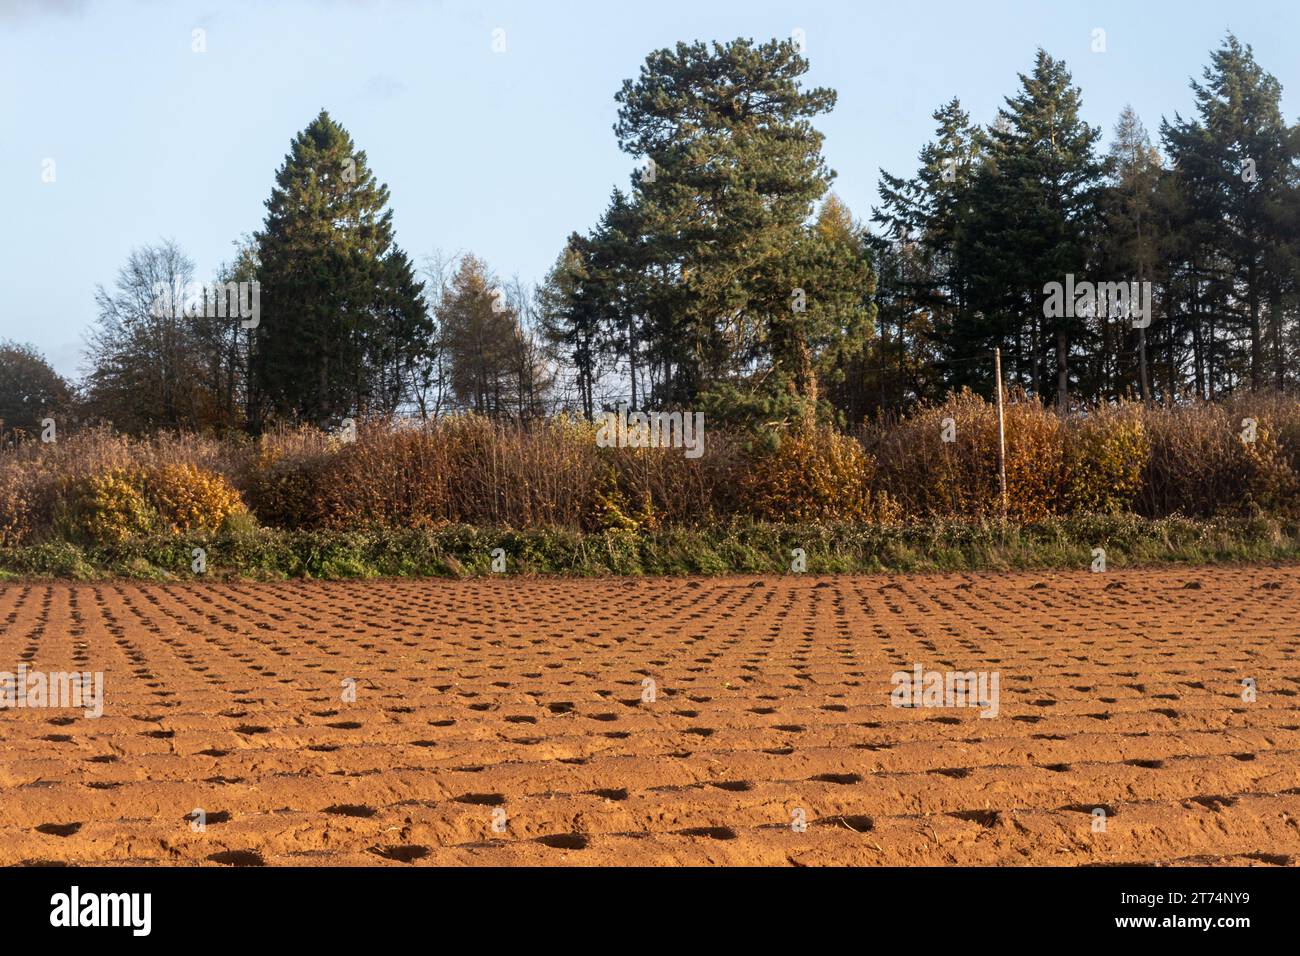 Pflugfeld mit Anbauflächen in Graten, landwirtschaftlich genutzte Landschaft in den Surrey Hills AONB im Herbst, England, Vereinigtes Königreich Stockfoto